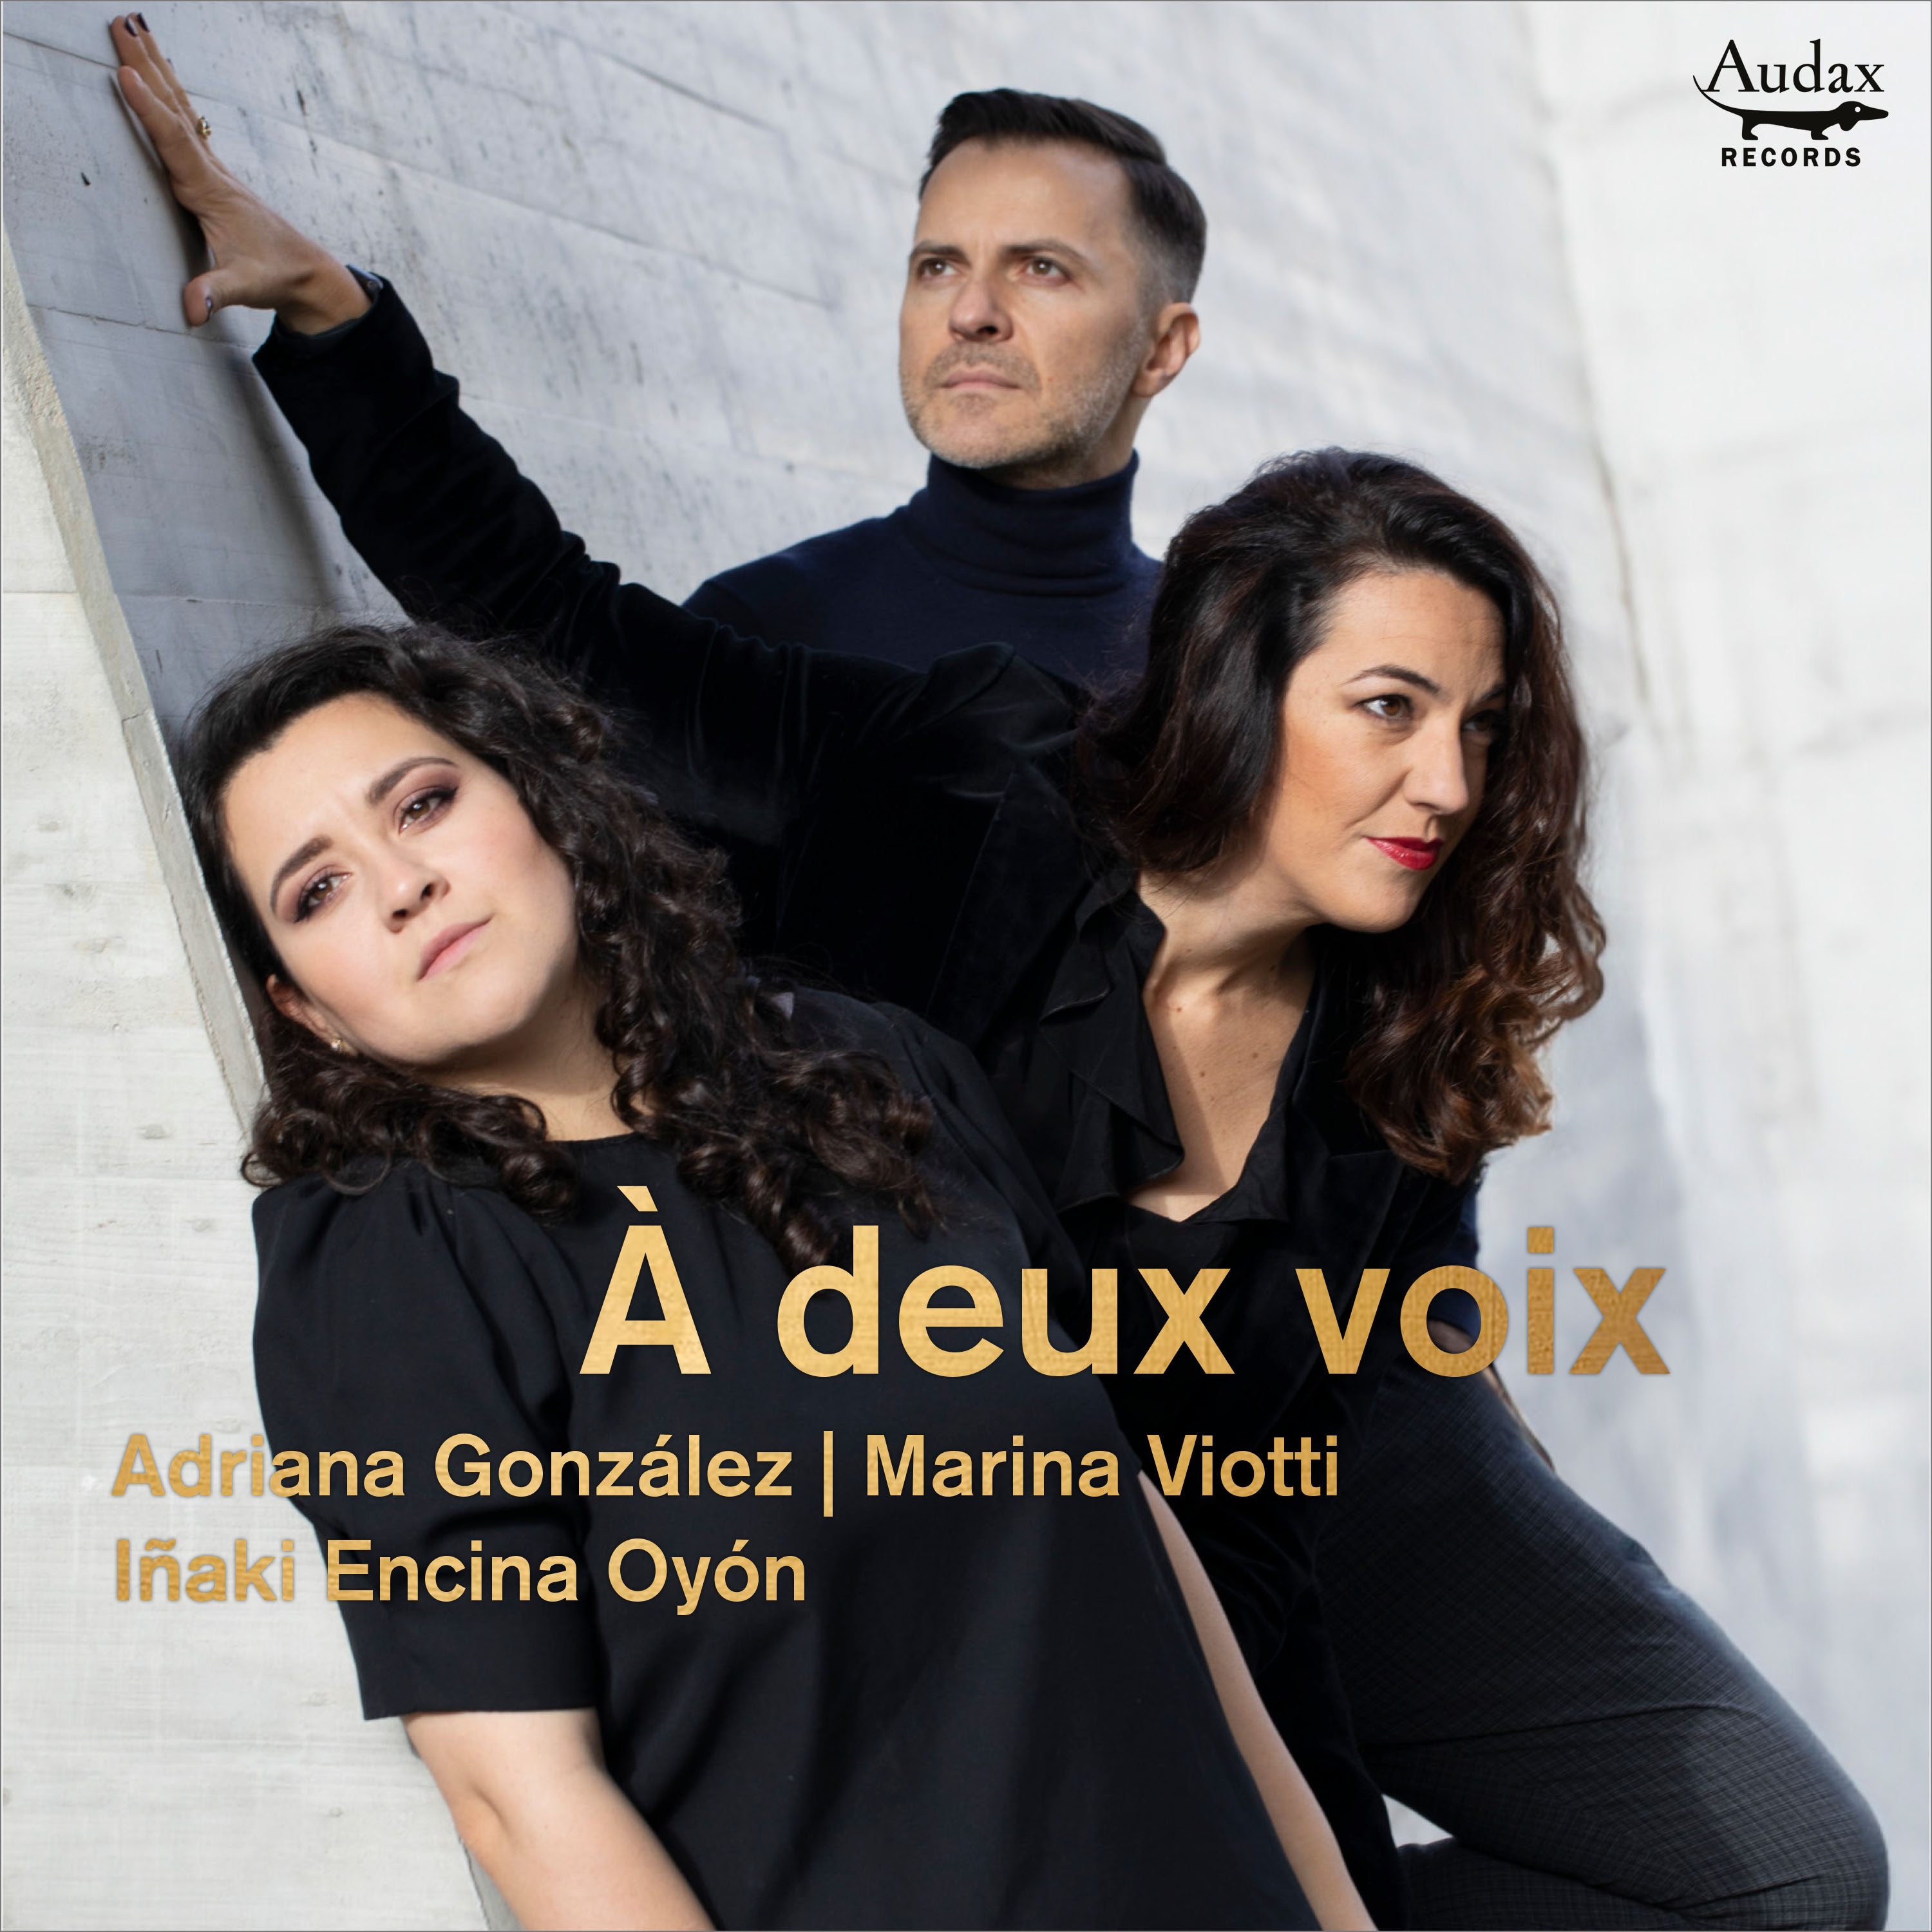 ADRIANA GONZÁLEZ CD Release &#8220;À deux voix&#8221; by Audax Records